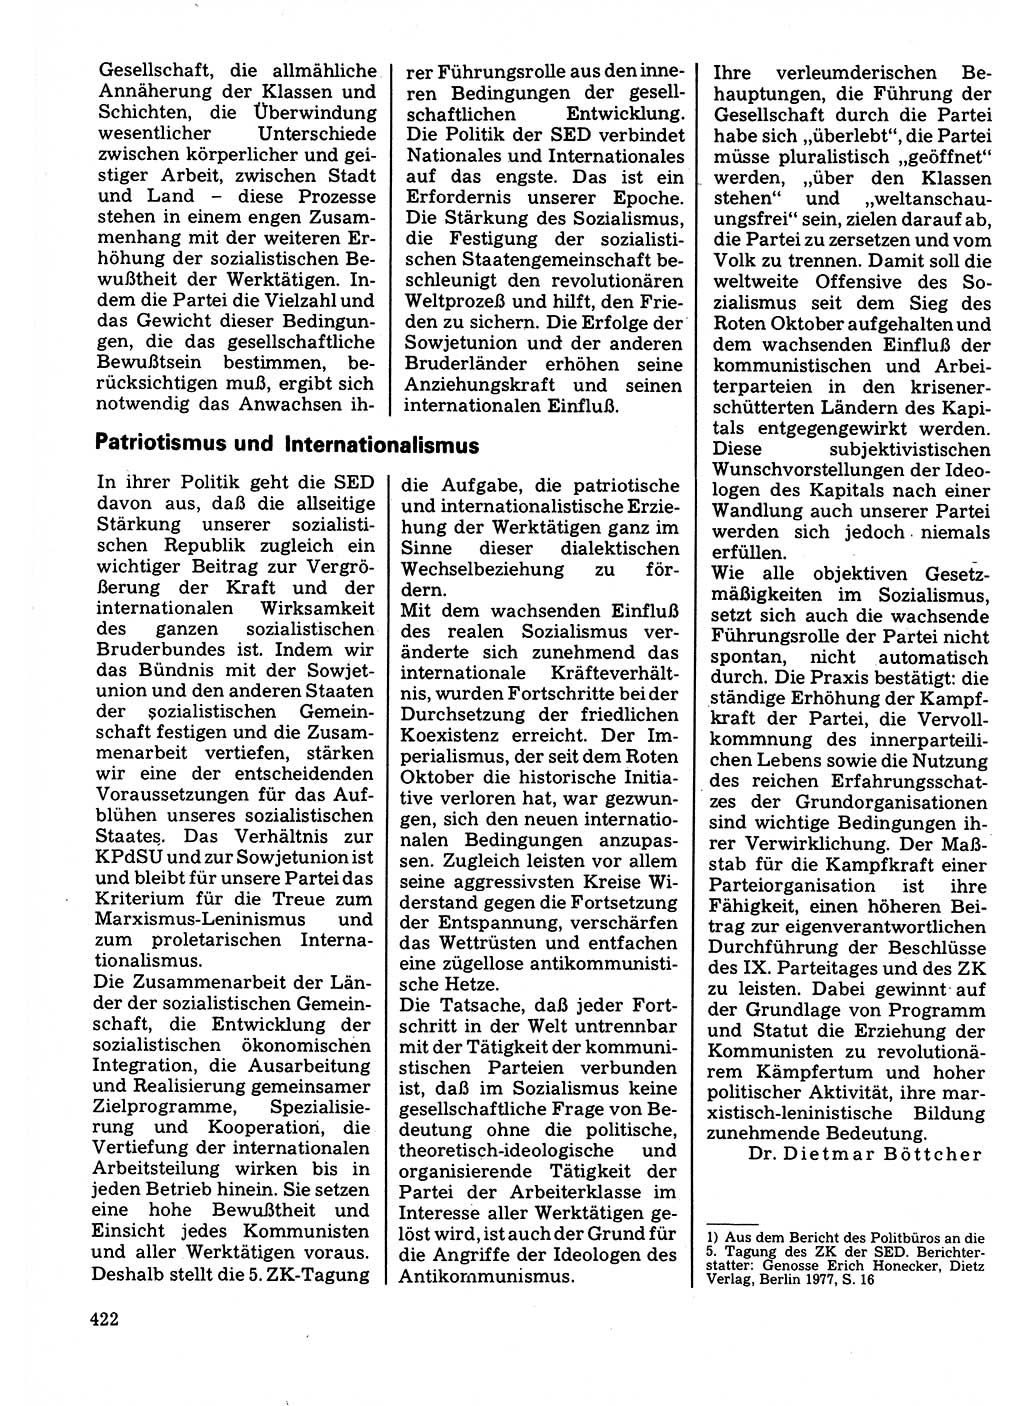 Neuer Weg (NW), Organ des Zentralkomitees (ZK) der SED (Sozialistische Einheitspartei Deutschlands) für Fragen des Parteilebens, 32. Jahrgang [Deutsche Demokratische Republik (DDR)] 1977, Seite 422 (NW ZK SED DDR 1977, S. 422)